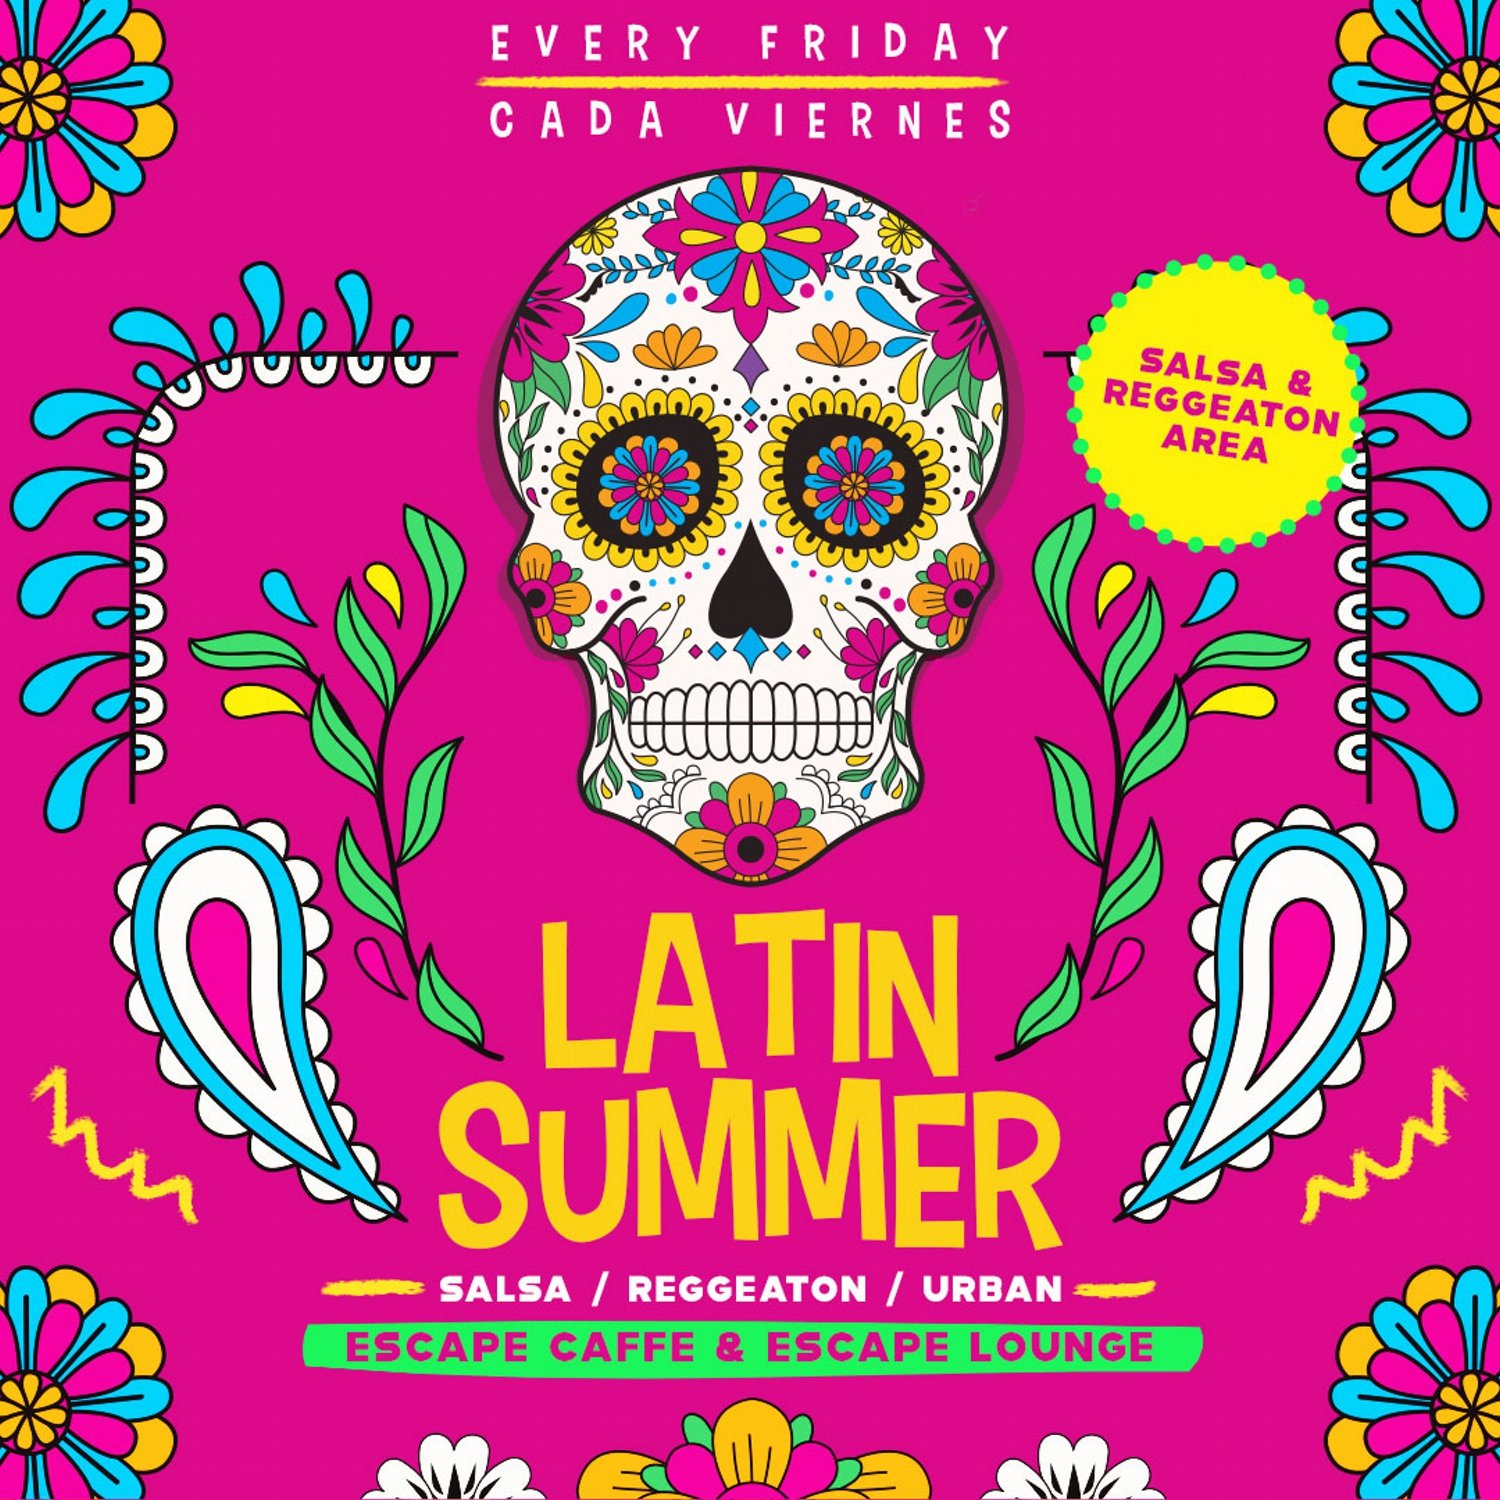 Latin Summer - Salsa meets Reggeaton 